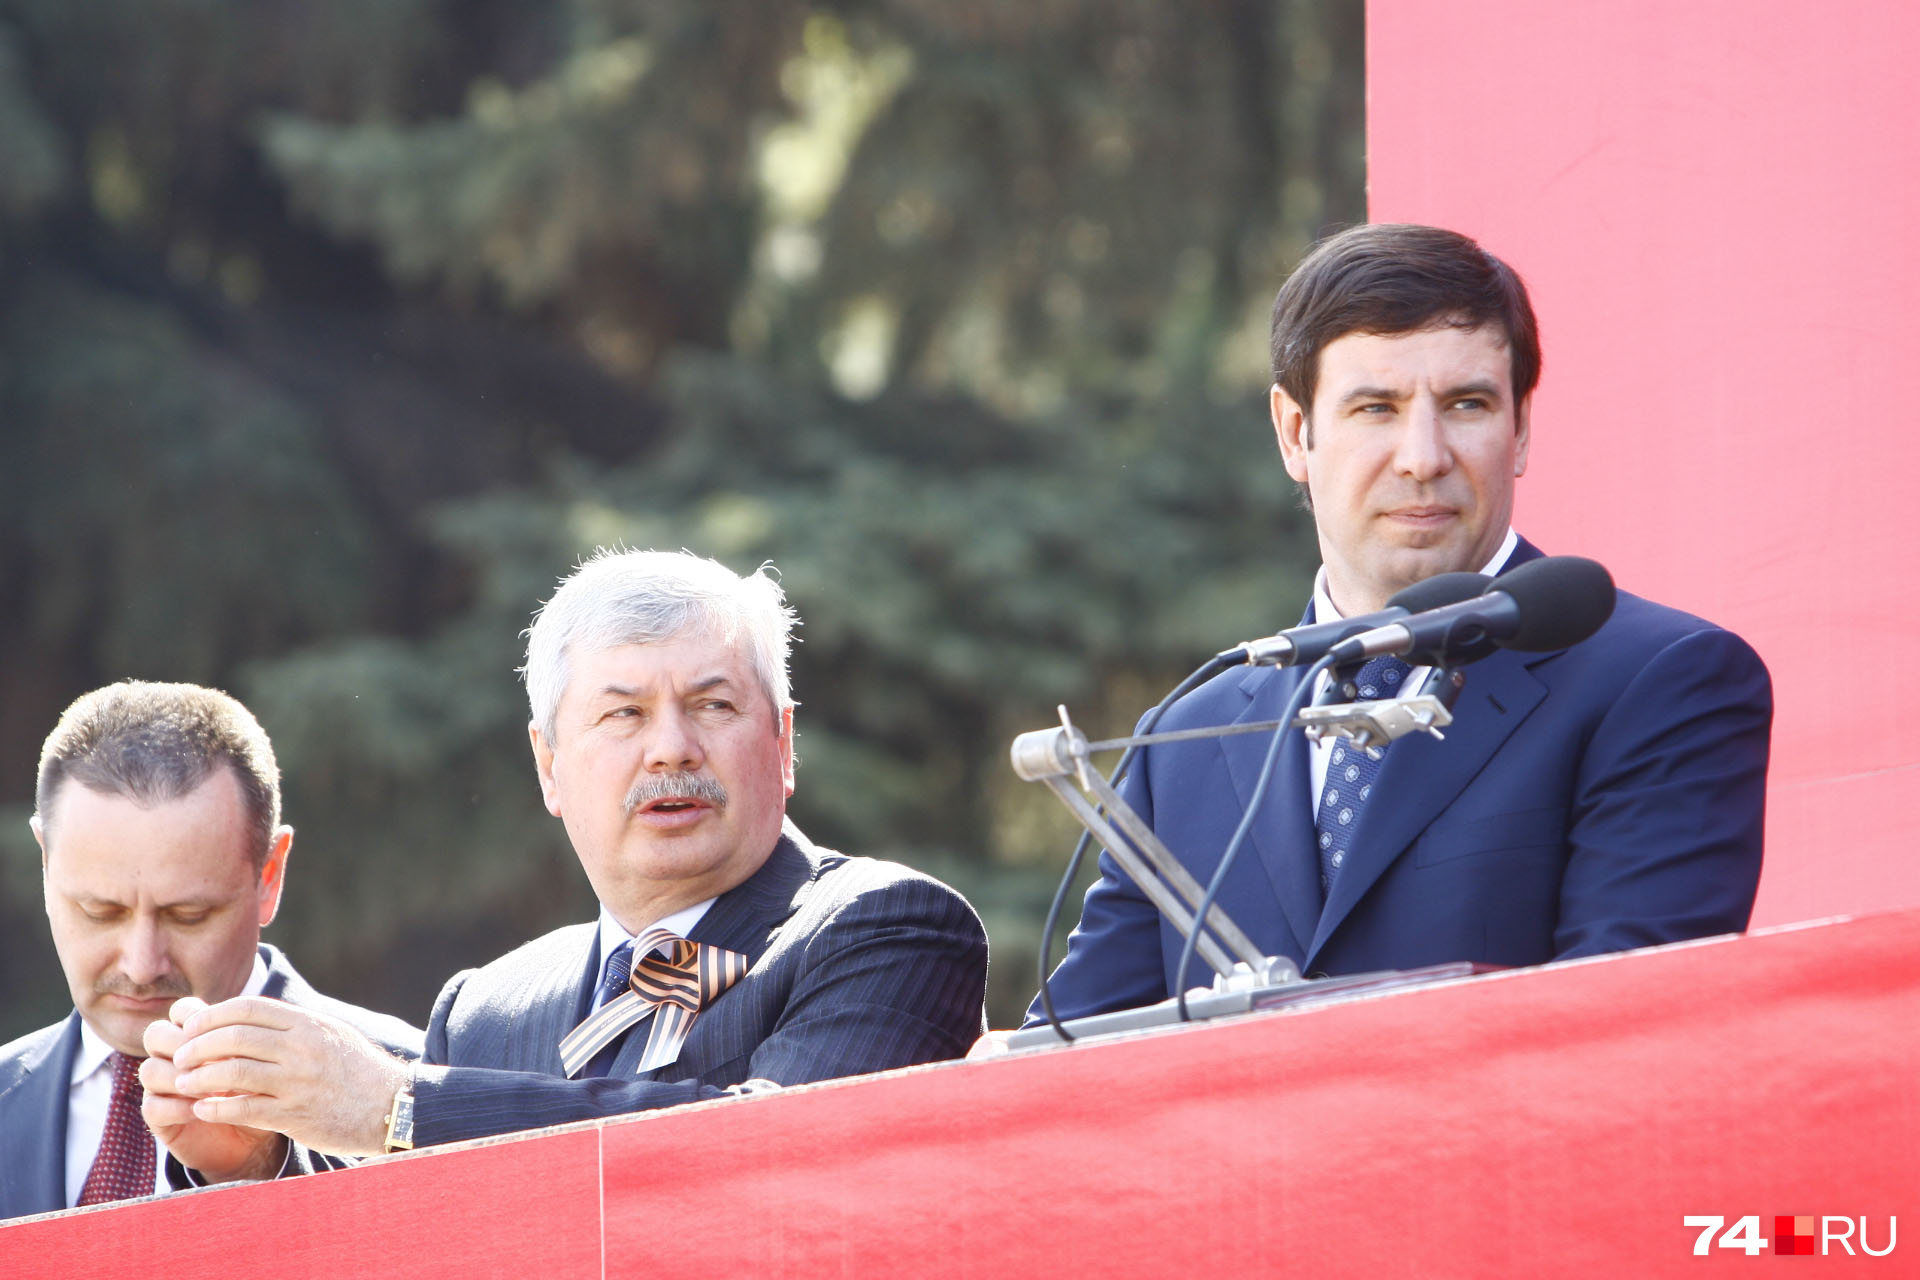 Владимир Мякуш работал при нескольких губернаторах. В их числе Михаил Юревич